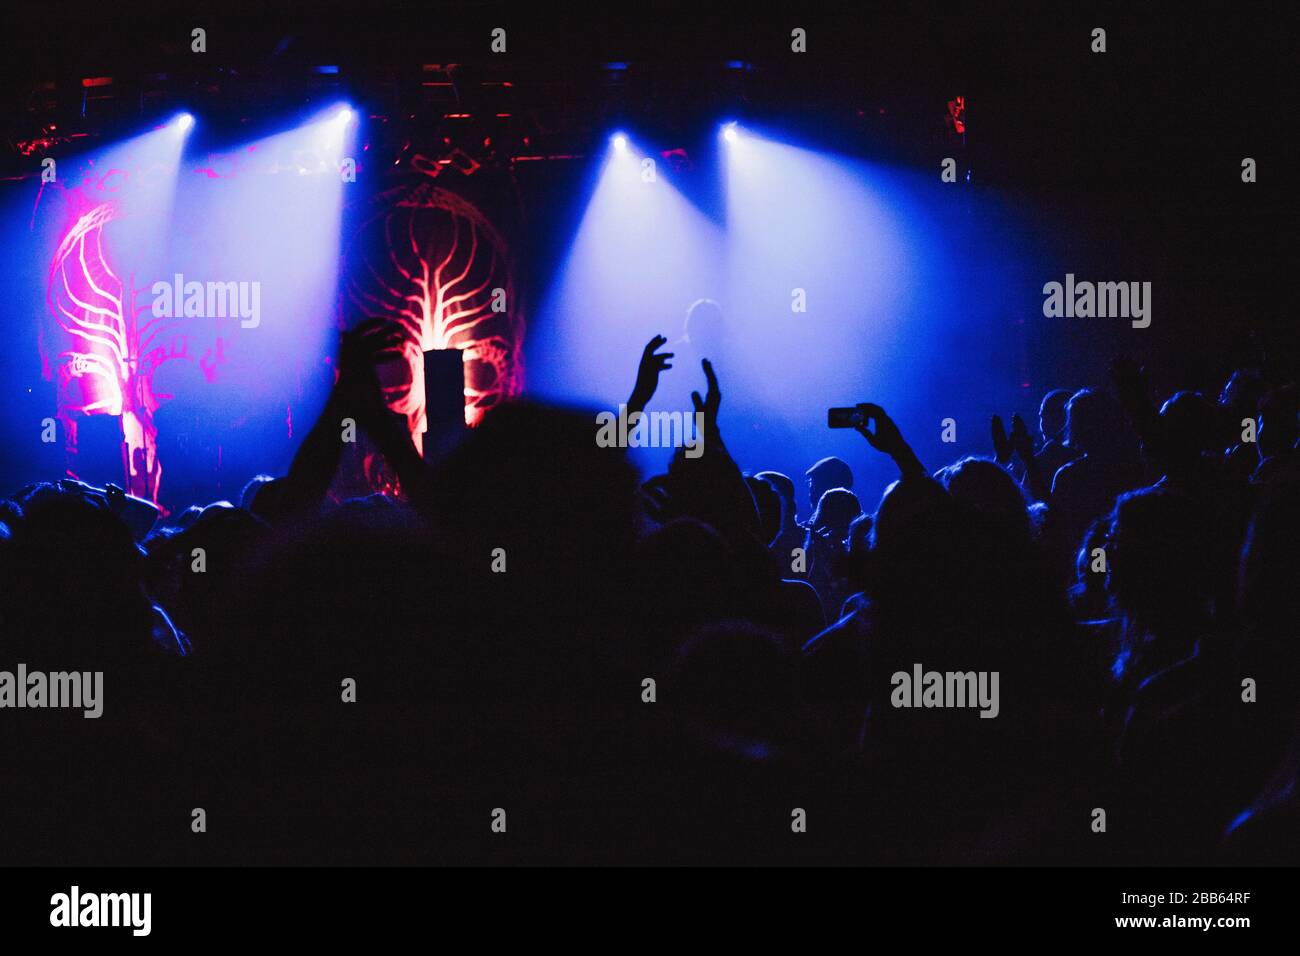 Konzertpublikum bei einem Konzert sind die Silhouetten der Menschen sichtbar, die durch Bühnenbeleuchtung, erhöhte Hände und Smartphones beleuchtet werden. Stockfoto